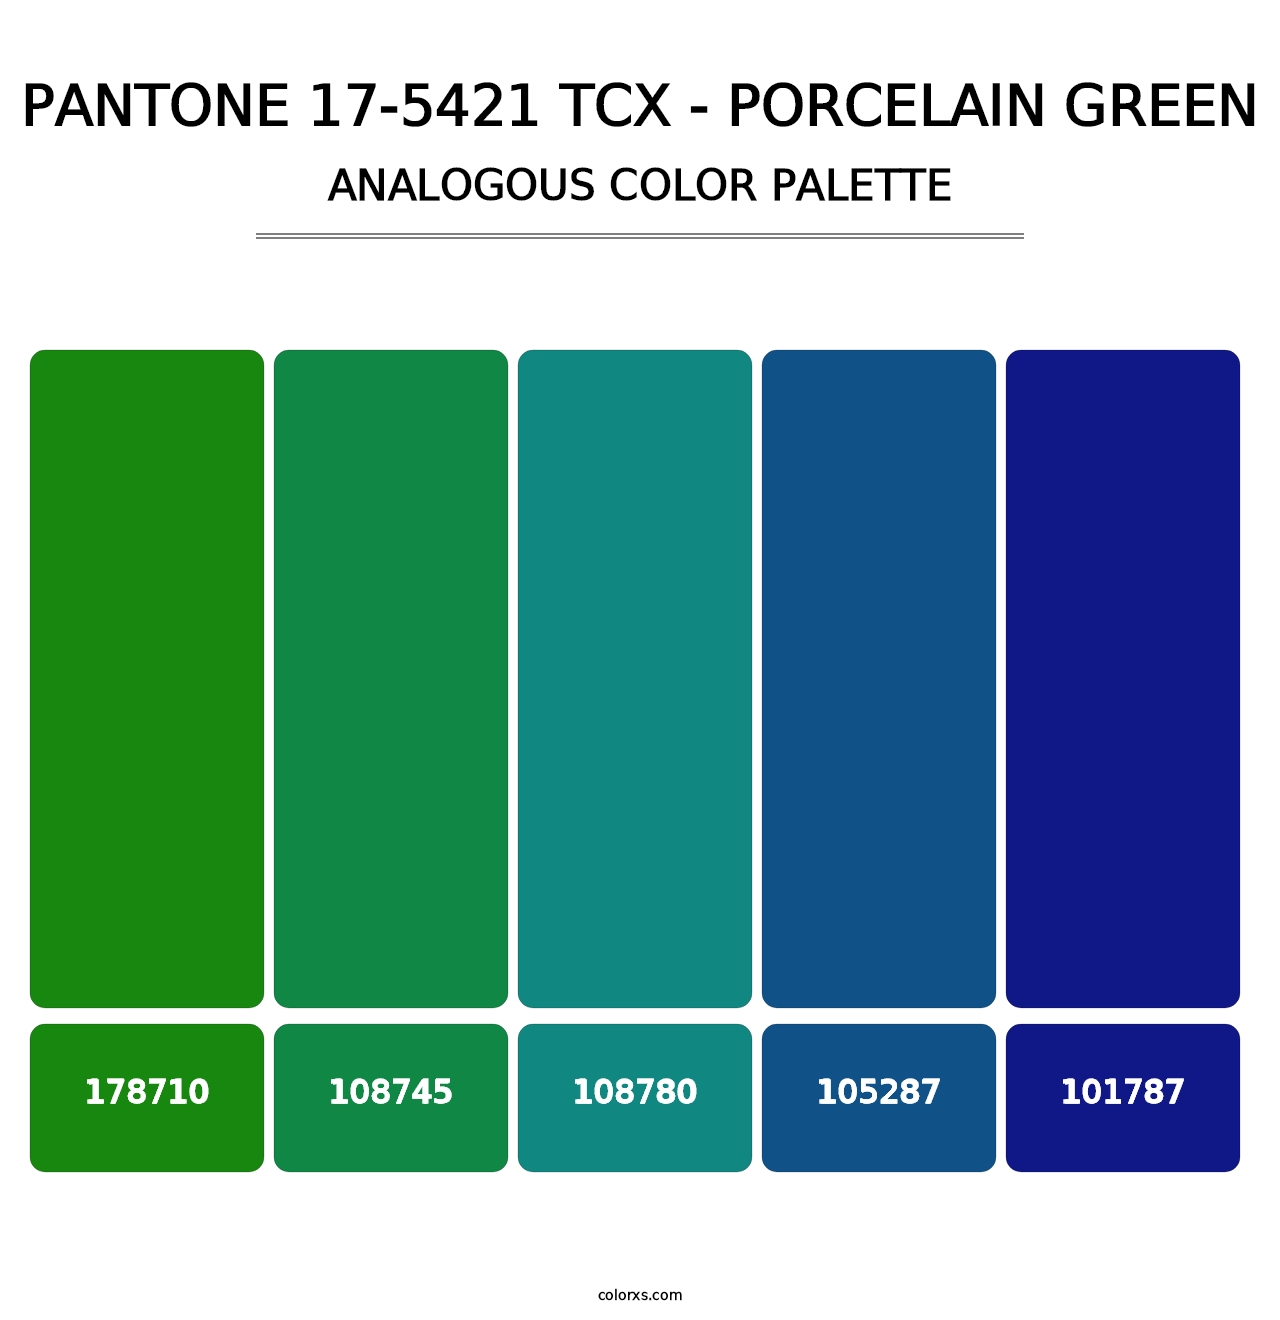 PANTONE 17-5421 TCX - Porcelain Green - Analogous Color Palette